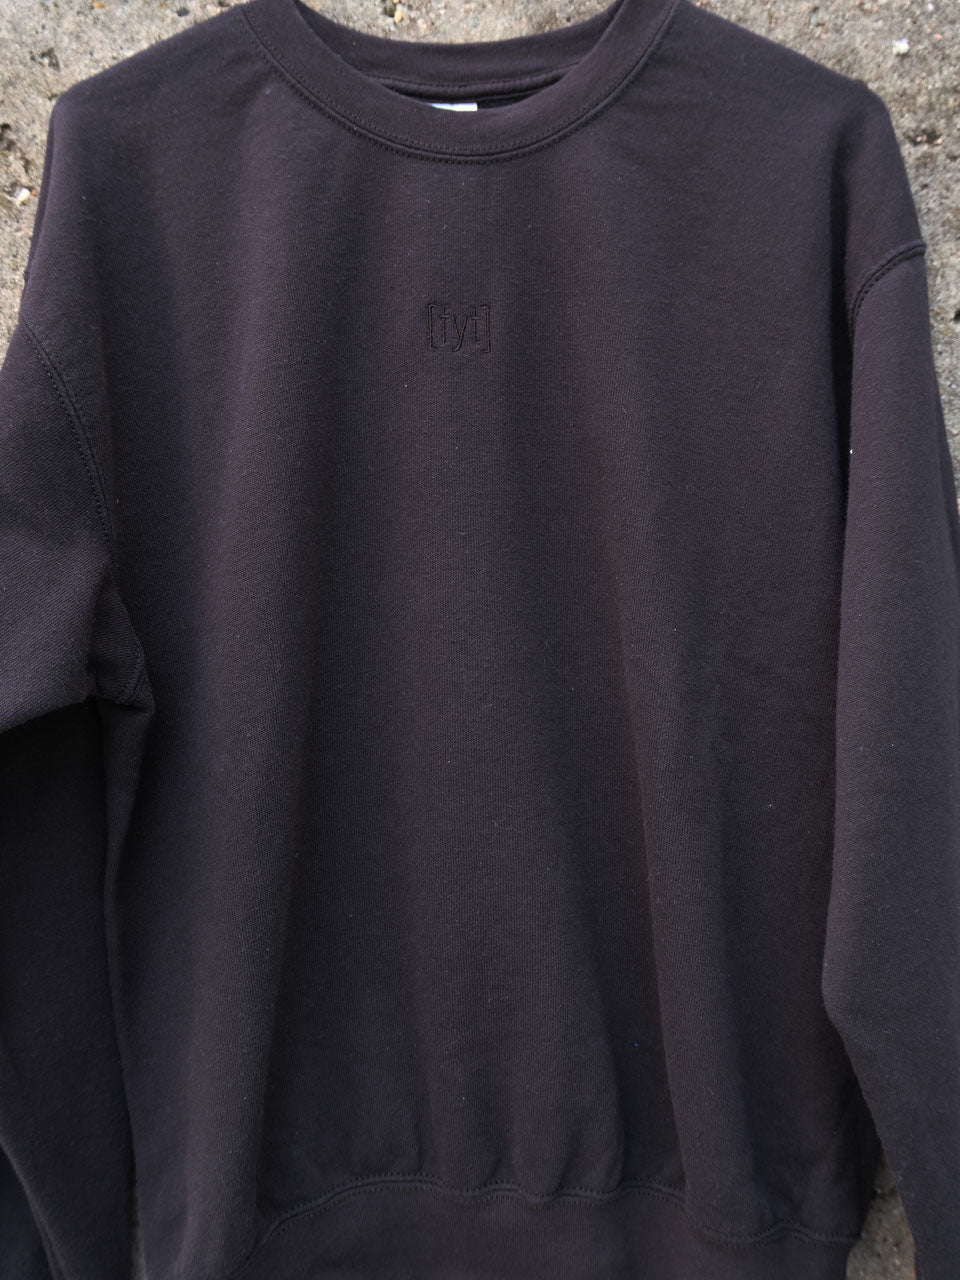 FYT Logo Sweatshirt schwarz